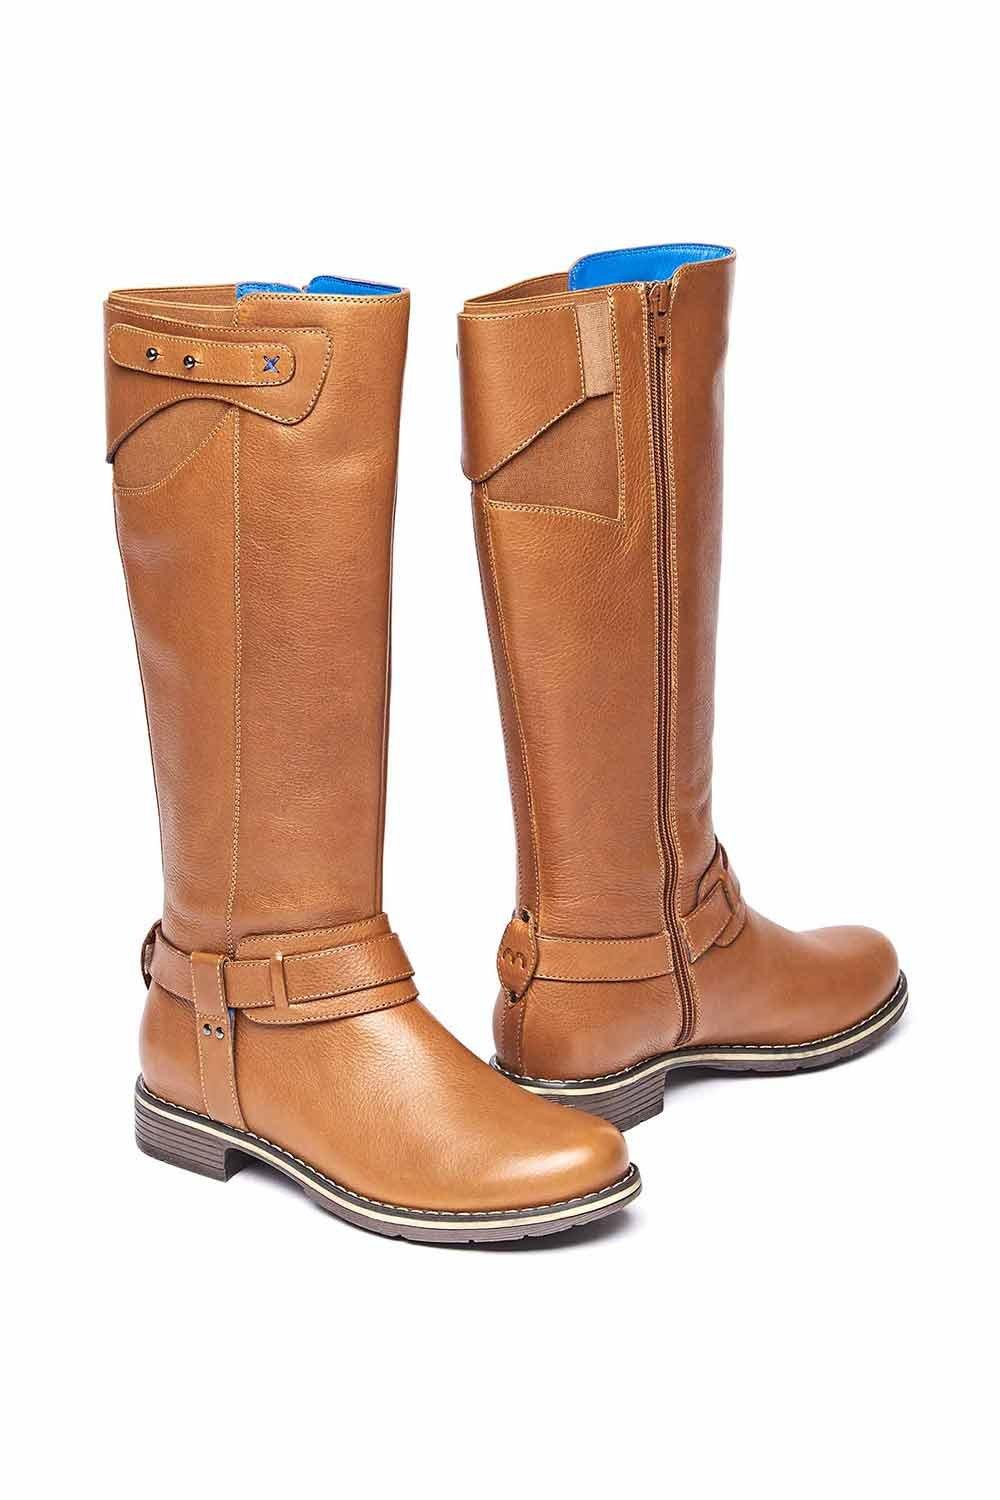 Классические кожаные длинные ботинки 'Mistletoe' Moshulu, коричневый